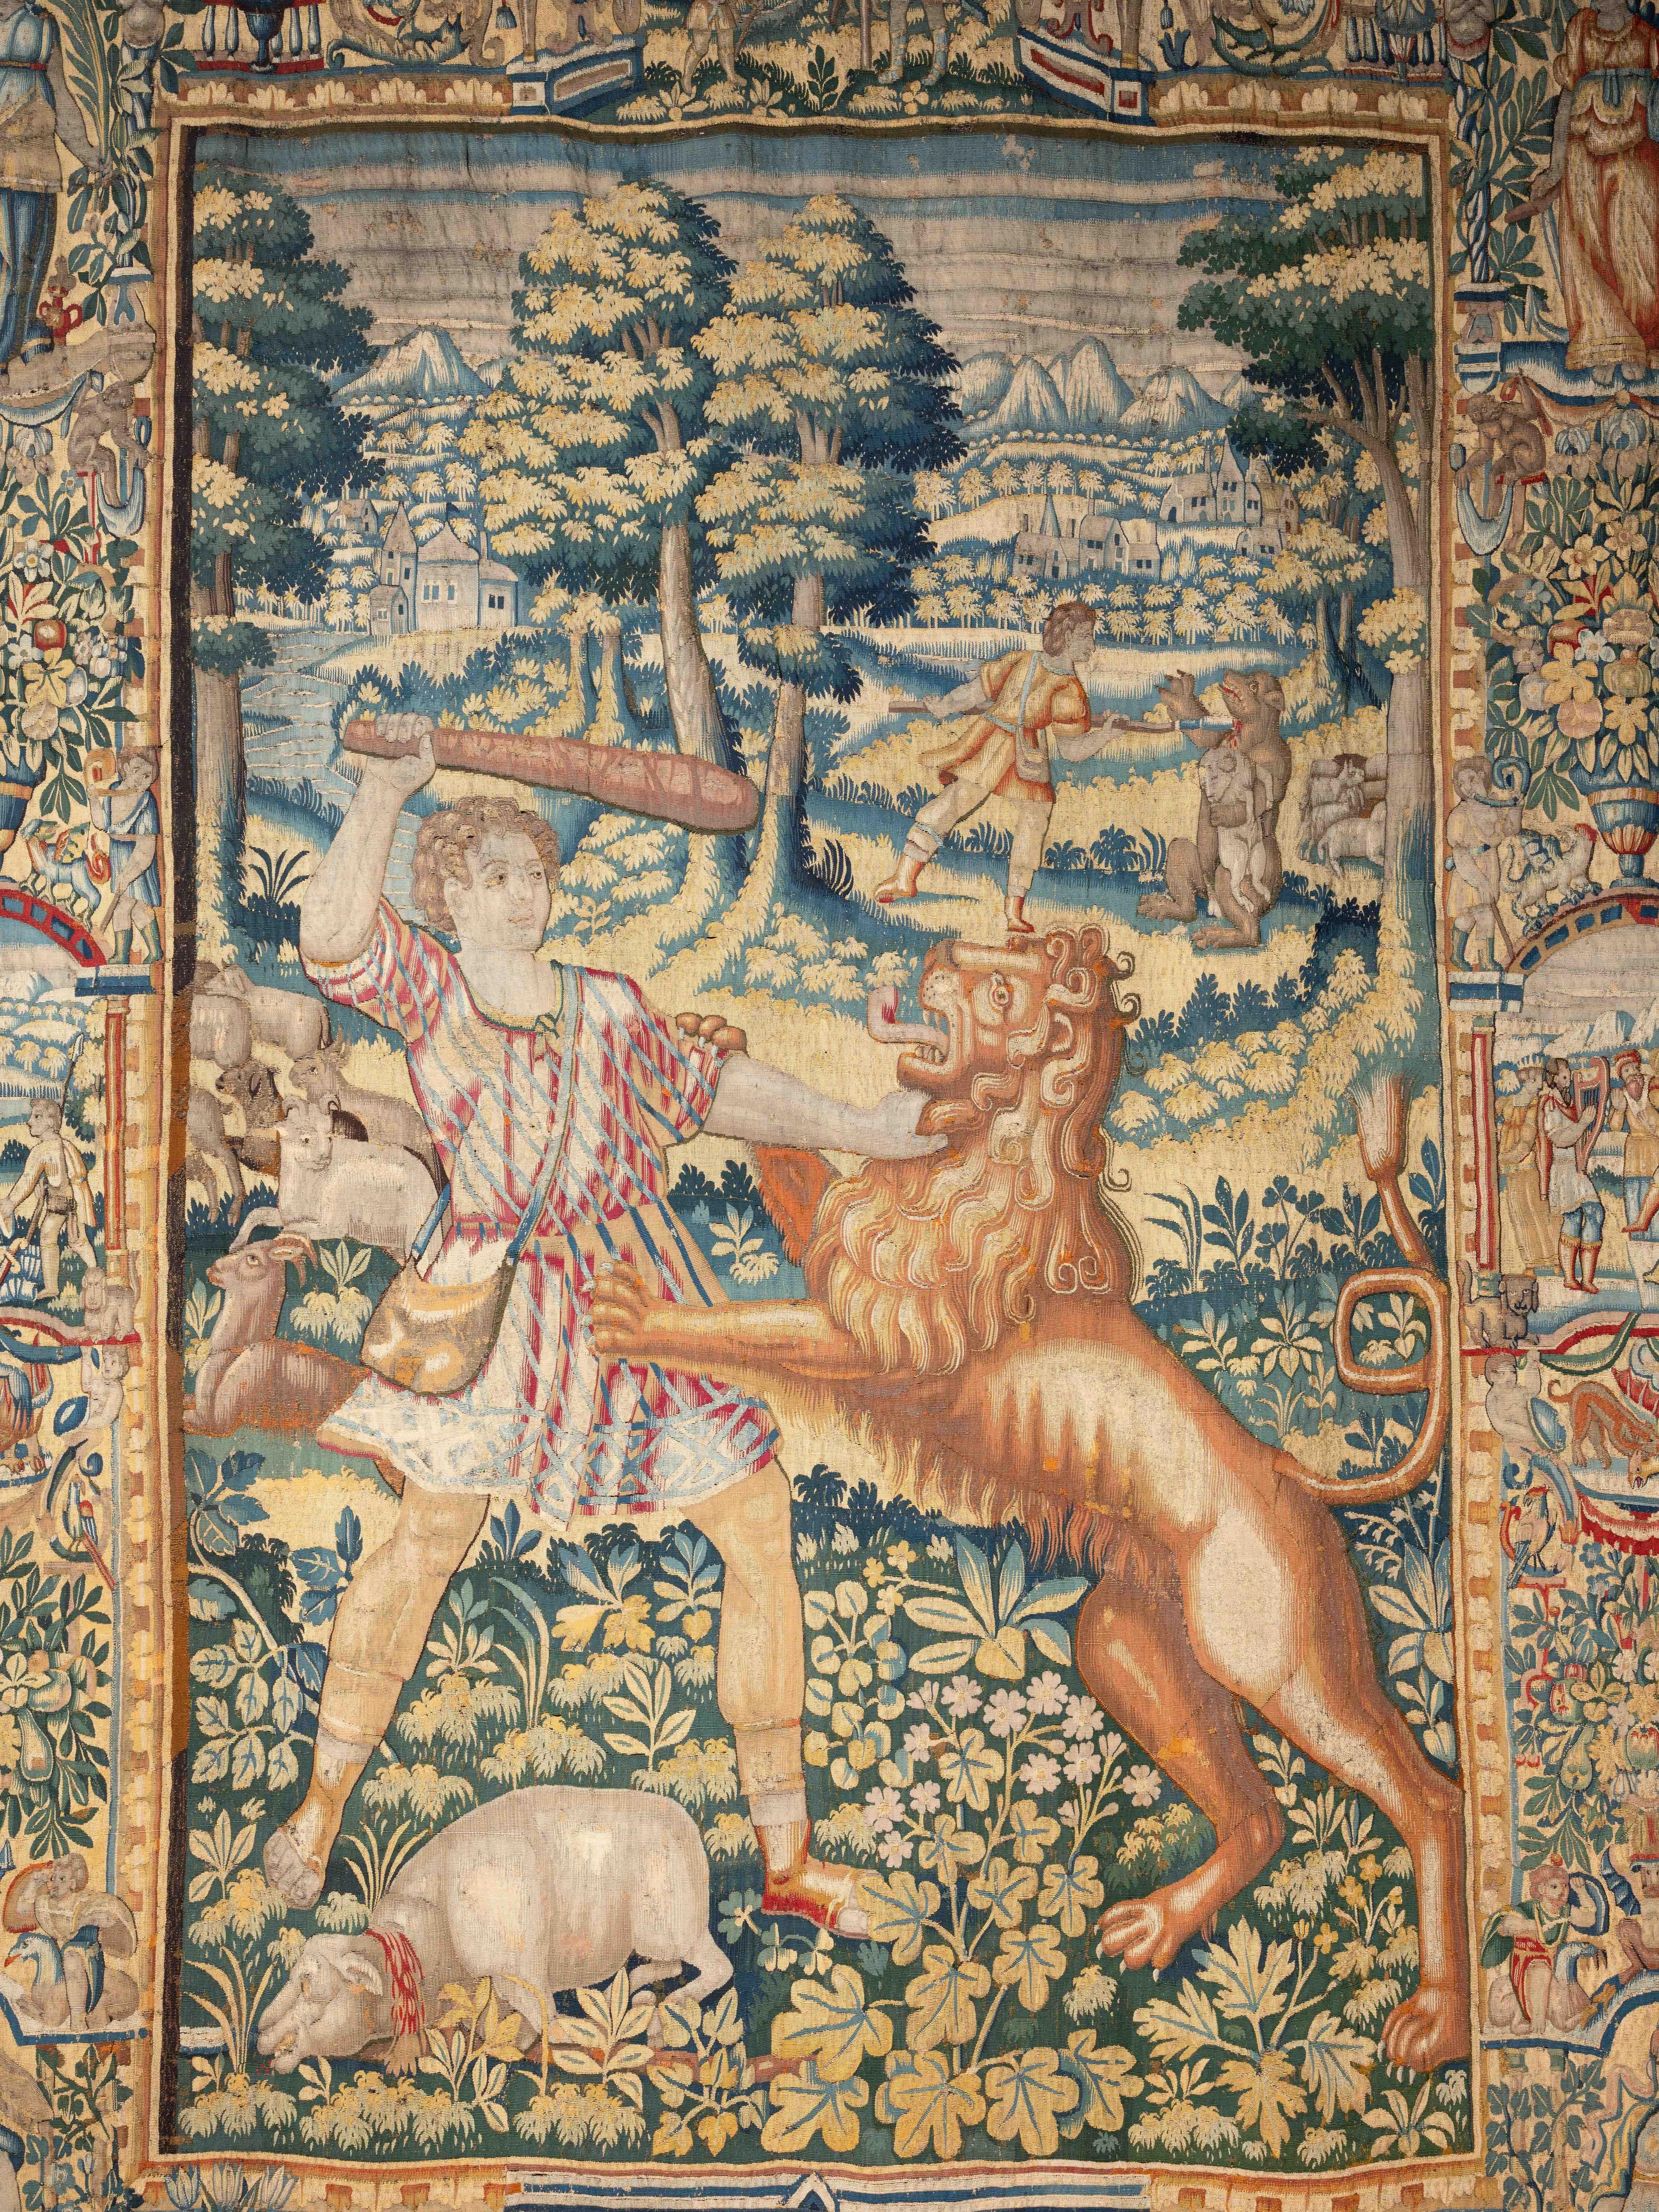 Brüsseler Wandteppich aus dem 16.
Die Geschichte von David
Brabant, 16. Jahrhundert
Monogram unten links.
320 x 250 cm

Dieser prächtige Brüsseler Wandteppich, der im 16. Jahrhundert aus Wolle und Seide gefertigt wurde, trägt in der linken unteren